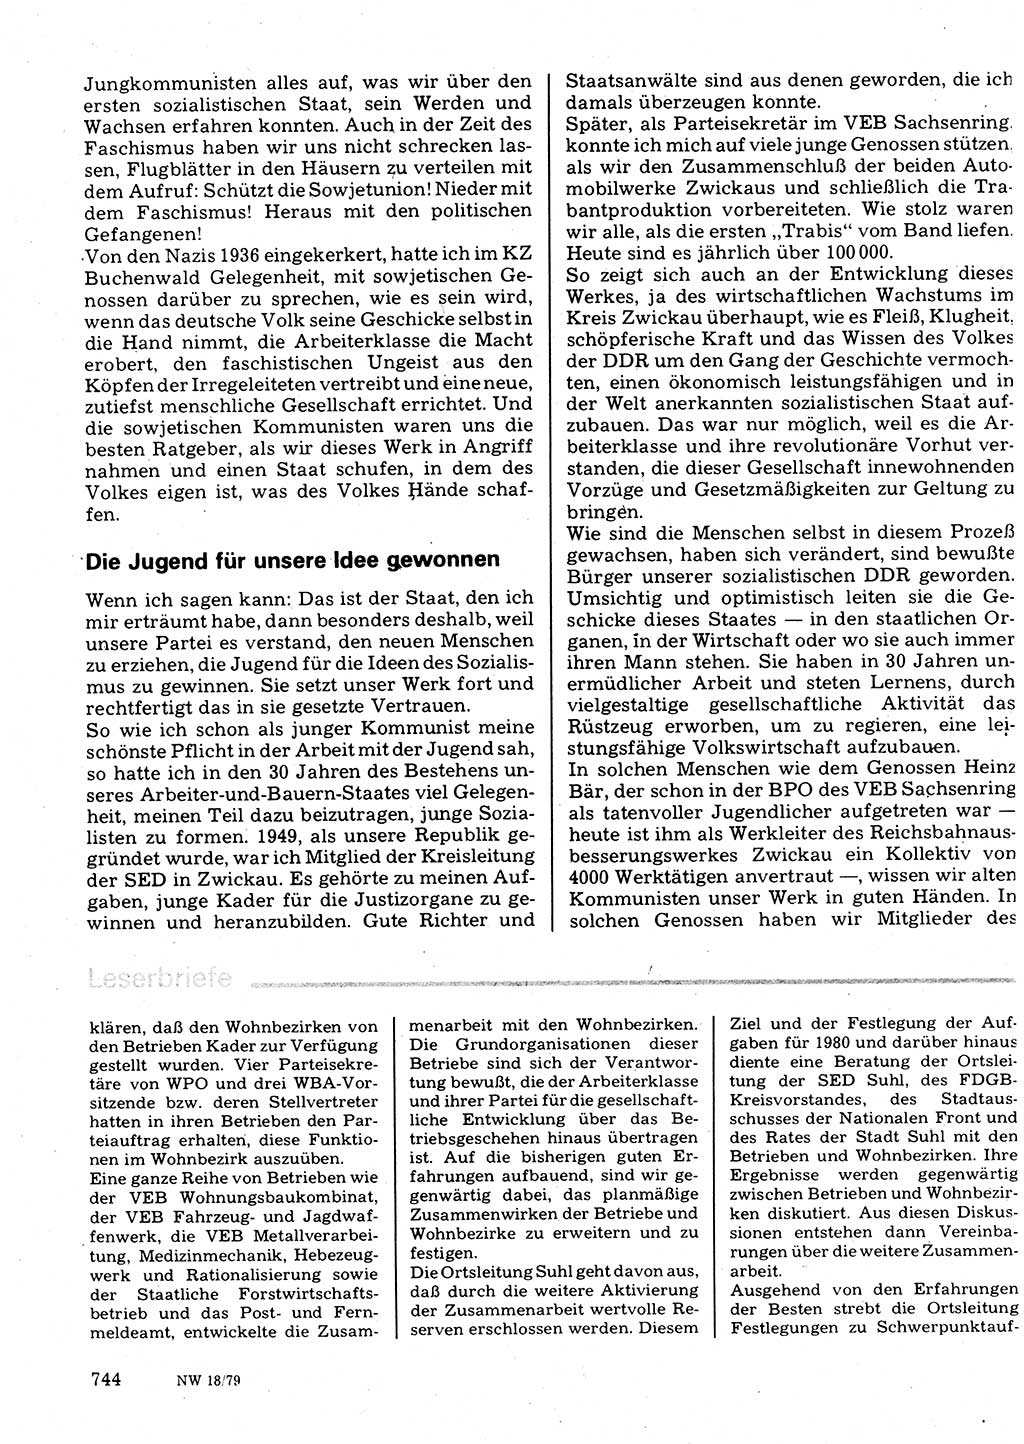 Neuer Weg (NW), Organ des Zentralkomitees (ZK) der SED (Sozialistische Einheitspartei Deutschlands) für Fragen des Parteilebens, 34. Jahrgang [Deutsche Demokratische Republik (DDR)] 1979, Seite 744 (NW ZK SED DDR 1979, S. 744)